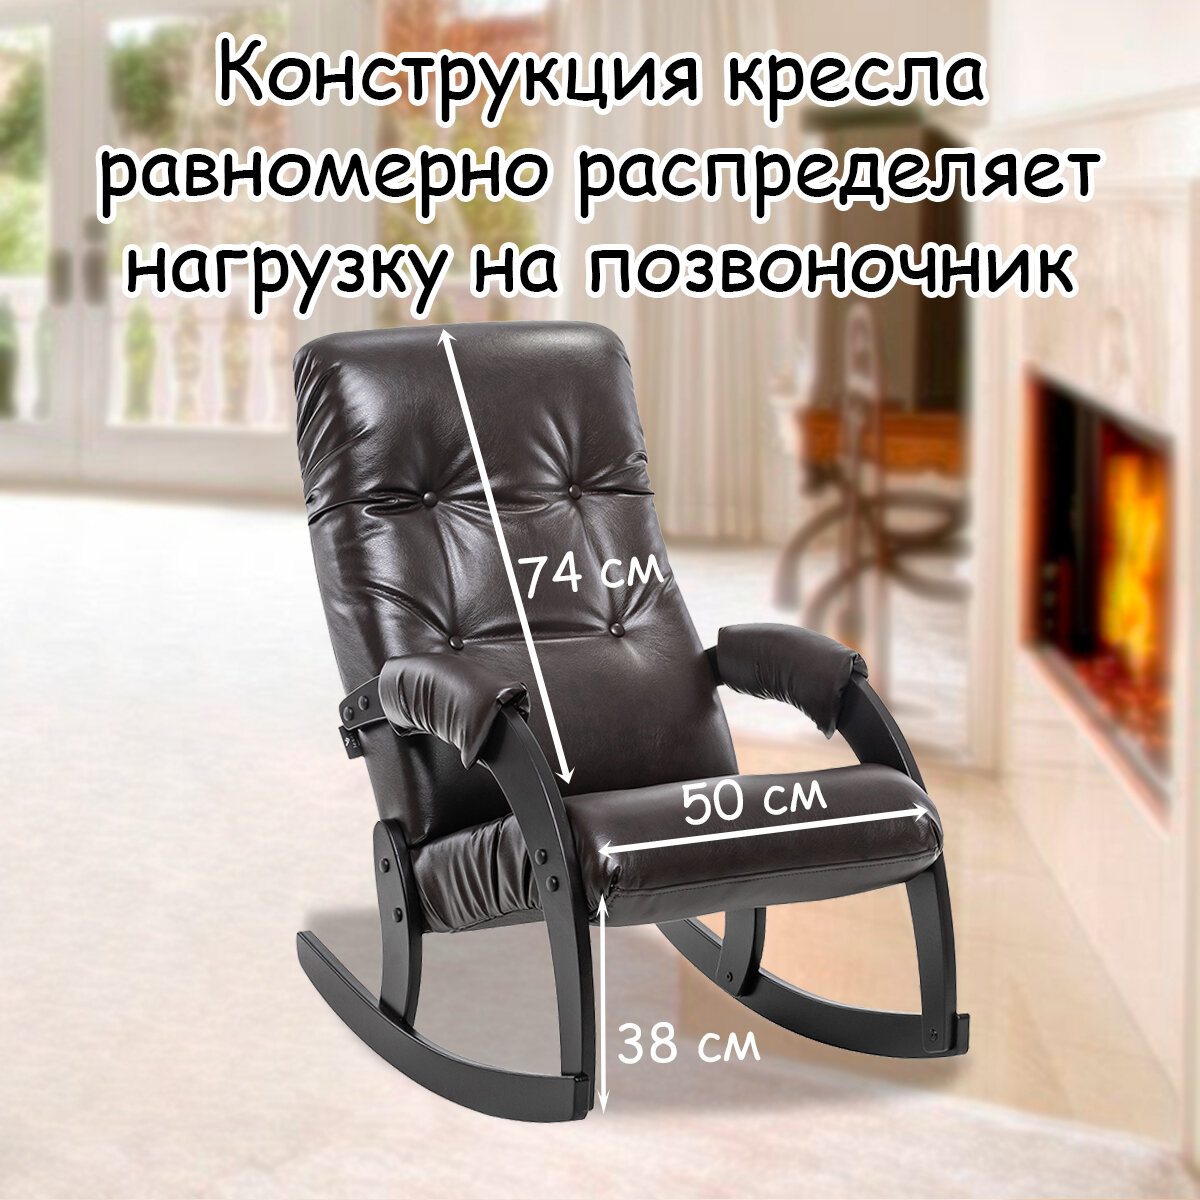 Кресло-качалка для взрослых 54х95х100 см, модель 67, экокожа, цвет: Oregon pearlamutr 120 (коричневый), каркас: Venge (черный) - фотография № 2